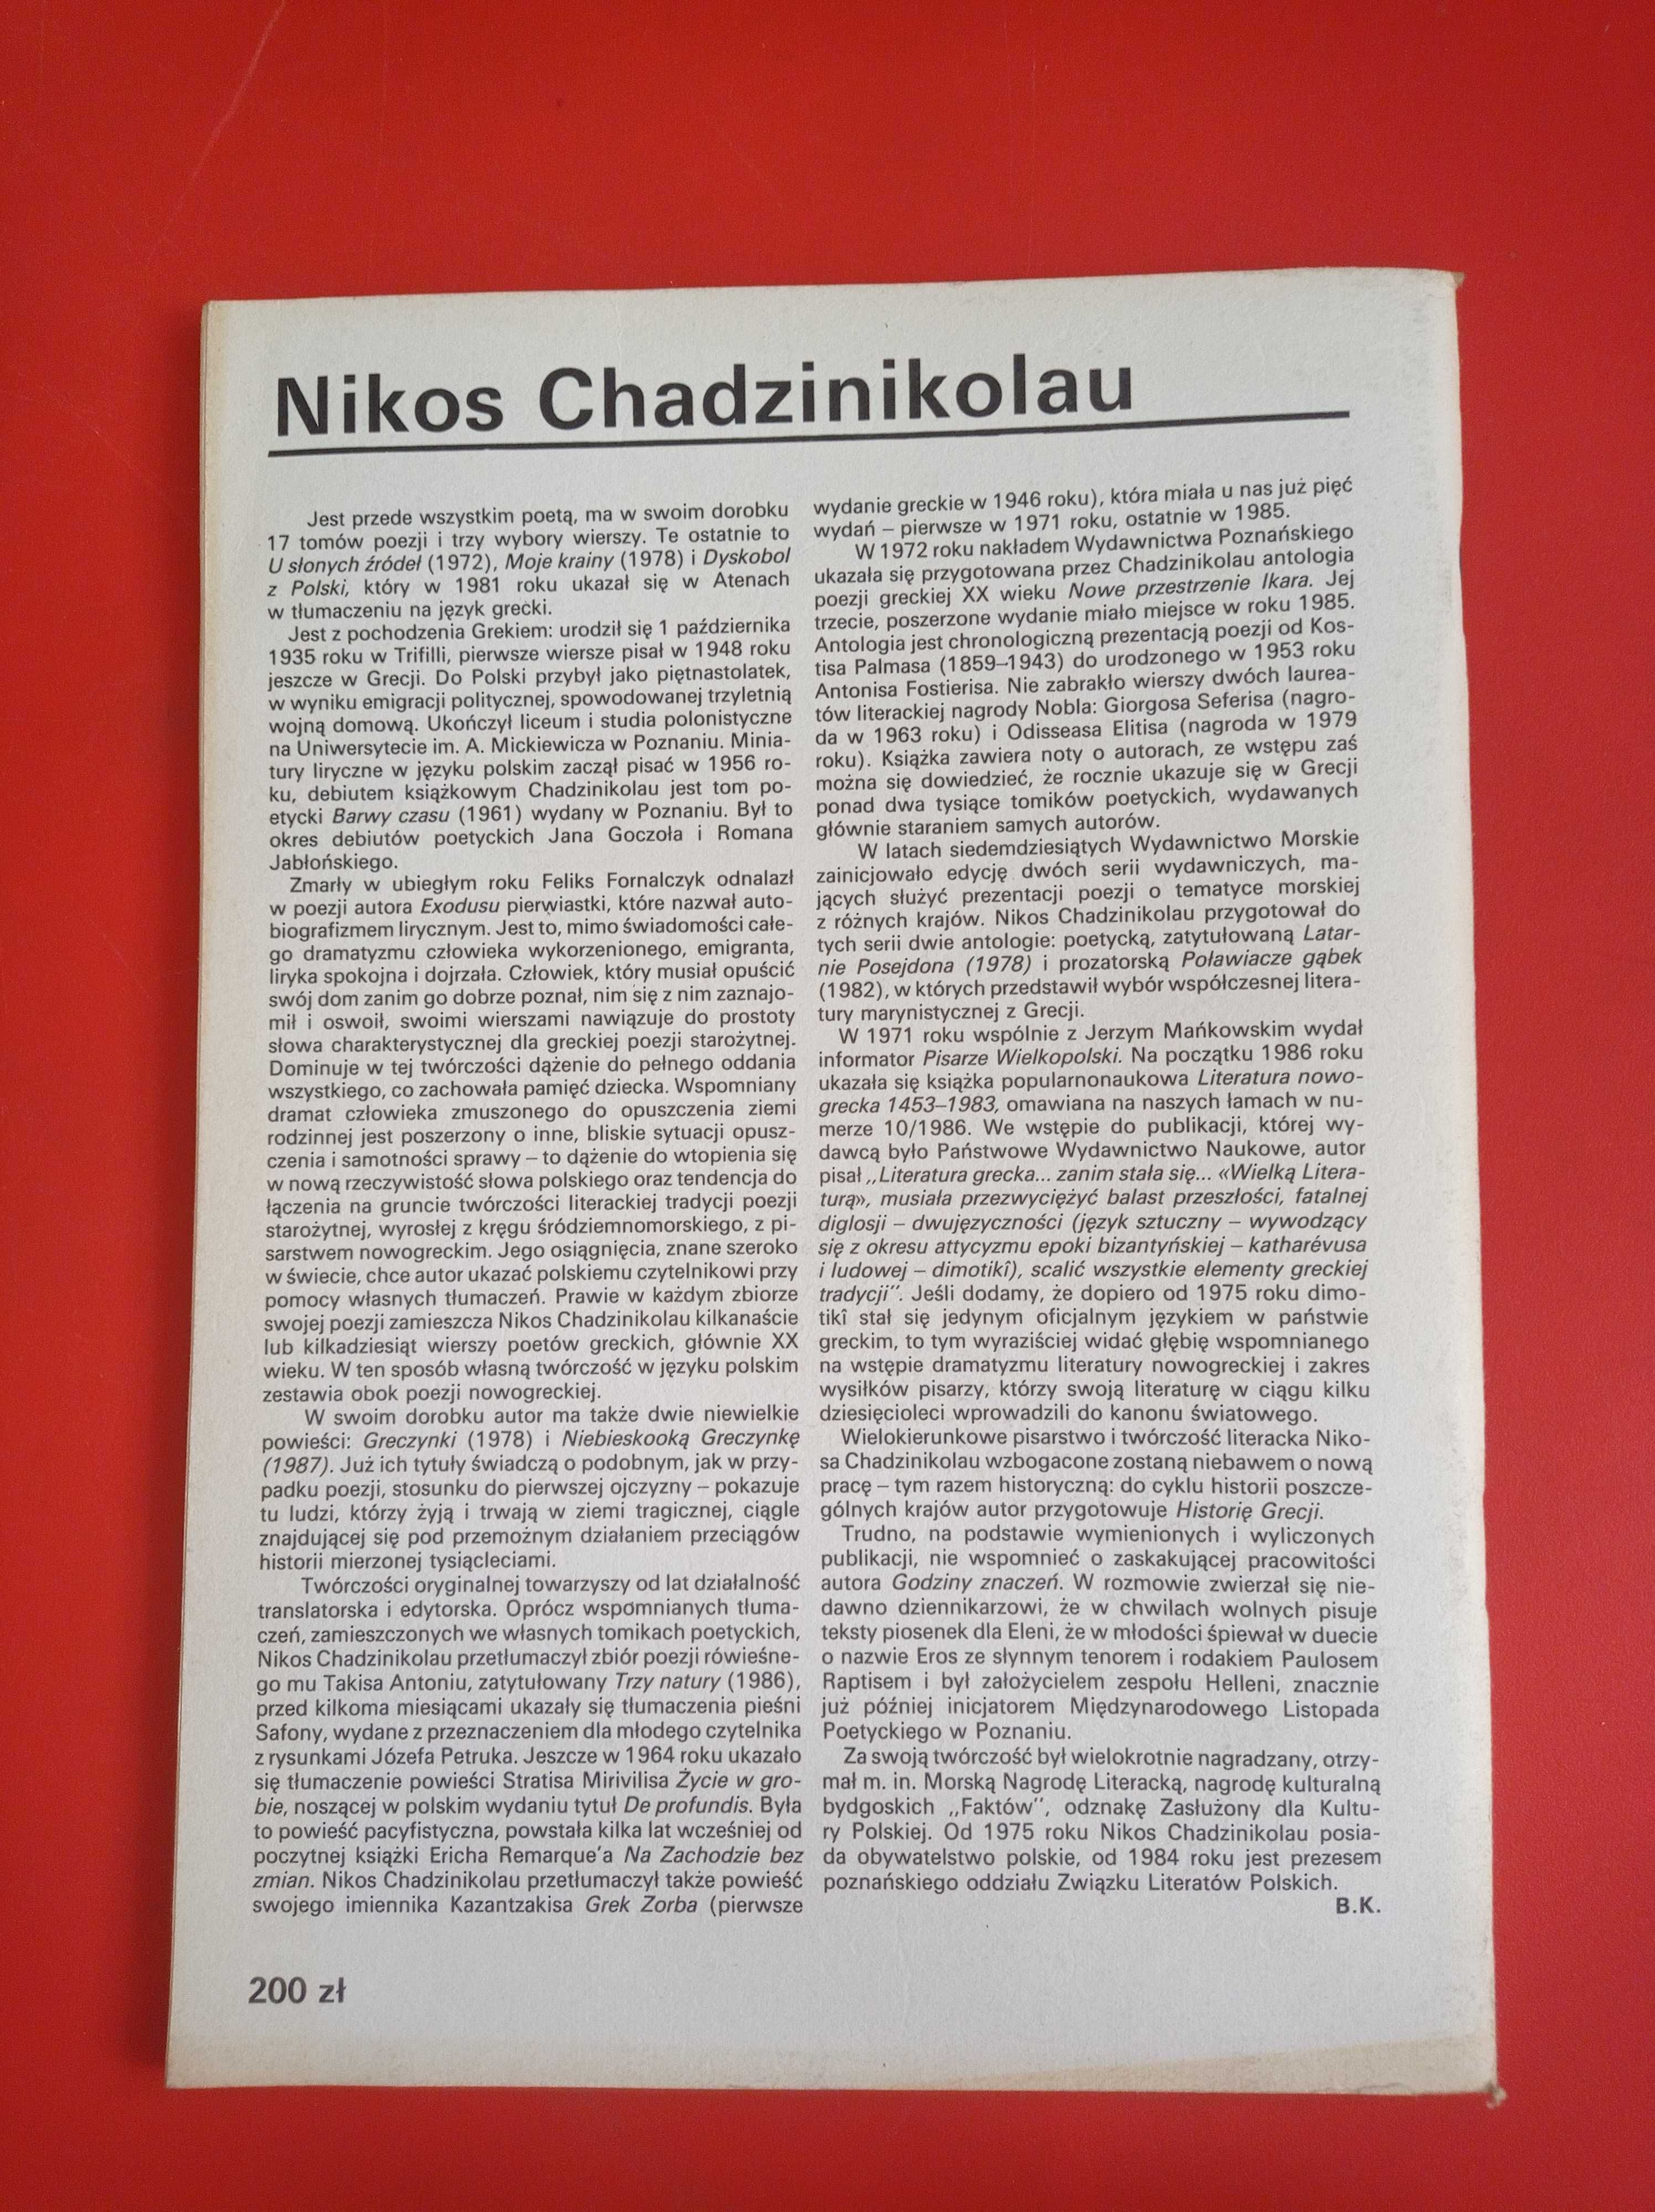 Nowe książki, nr 10, październik 1988, Nikos Chadzinikolau